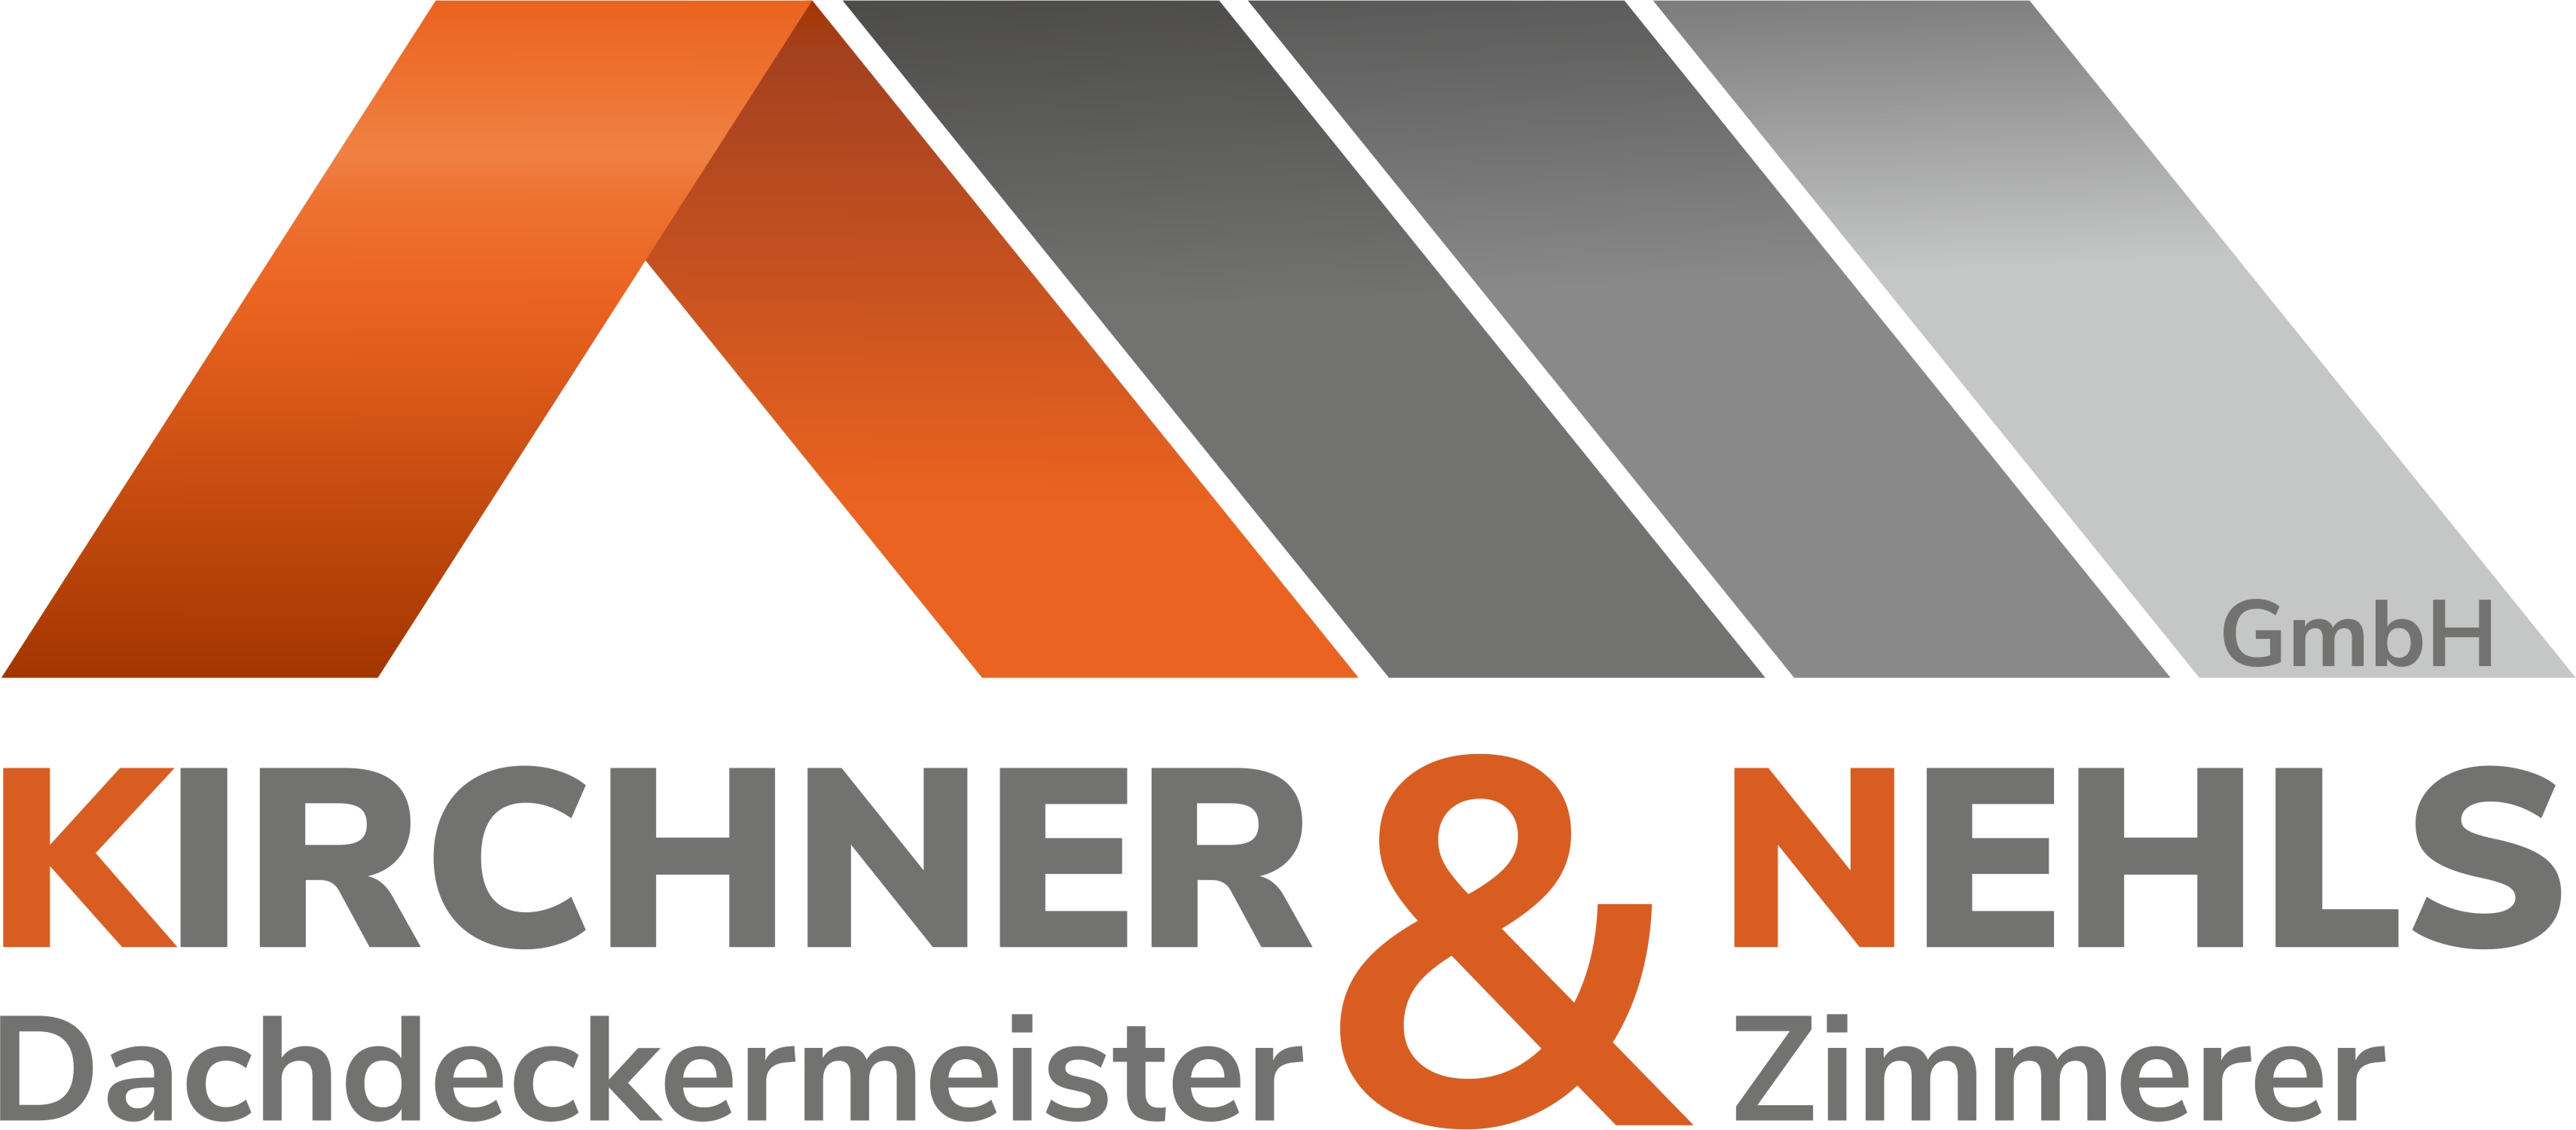 Kirchner & Nehls GmbH